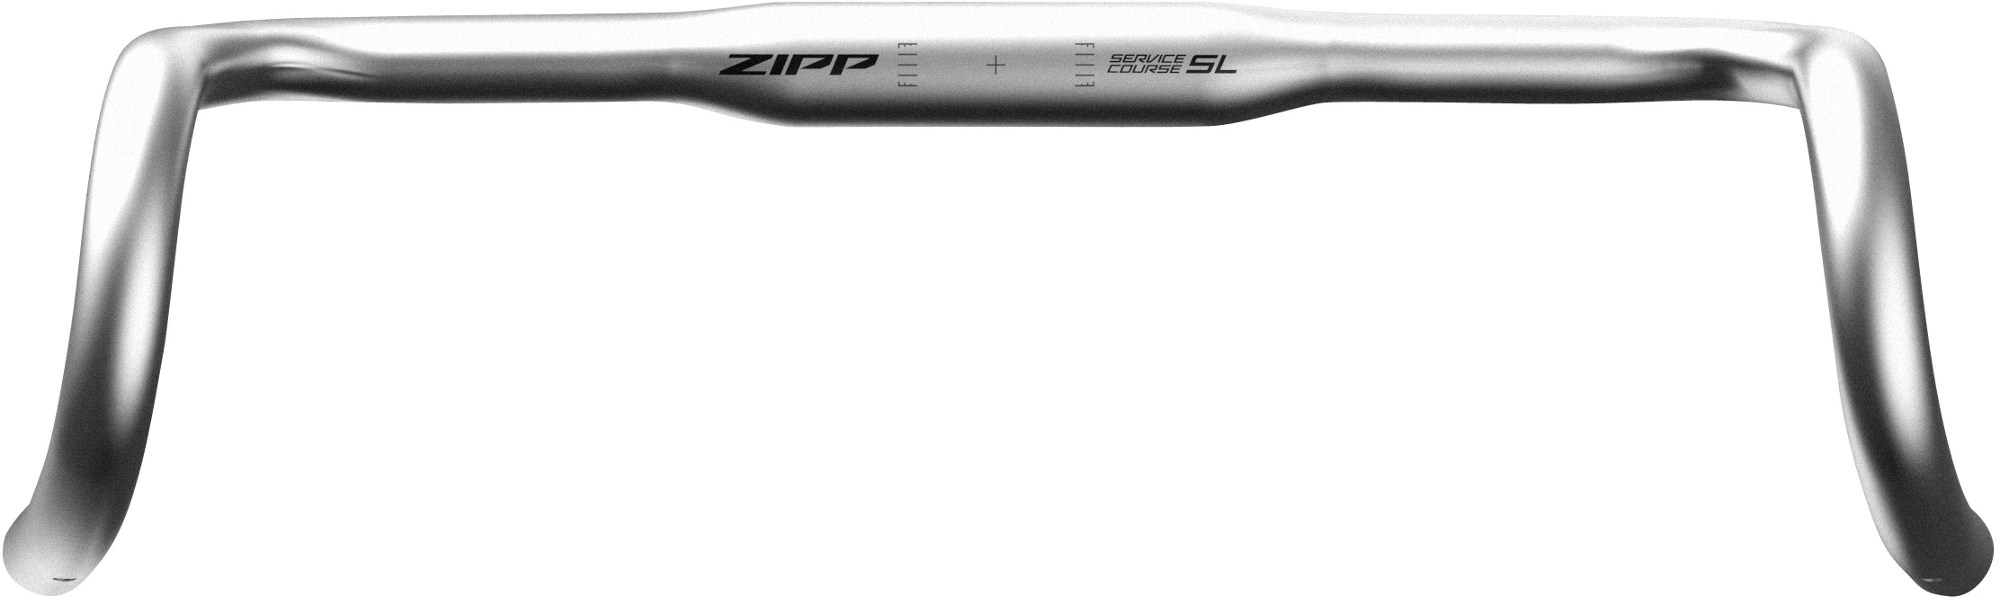 Курс обслуживания 70 Откидной руль XPLR Zipp, серый